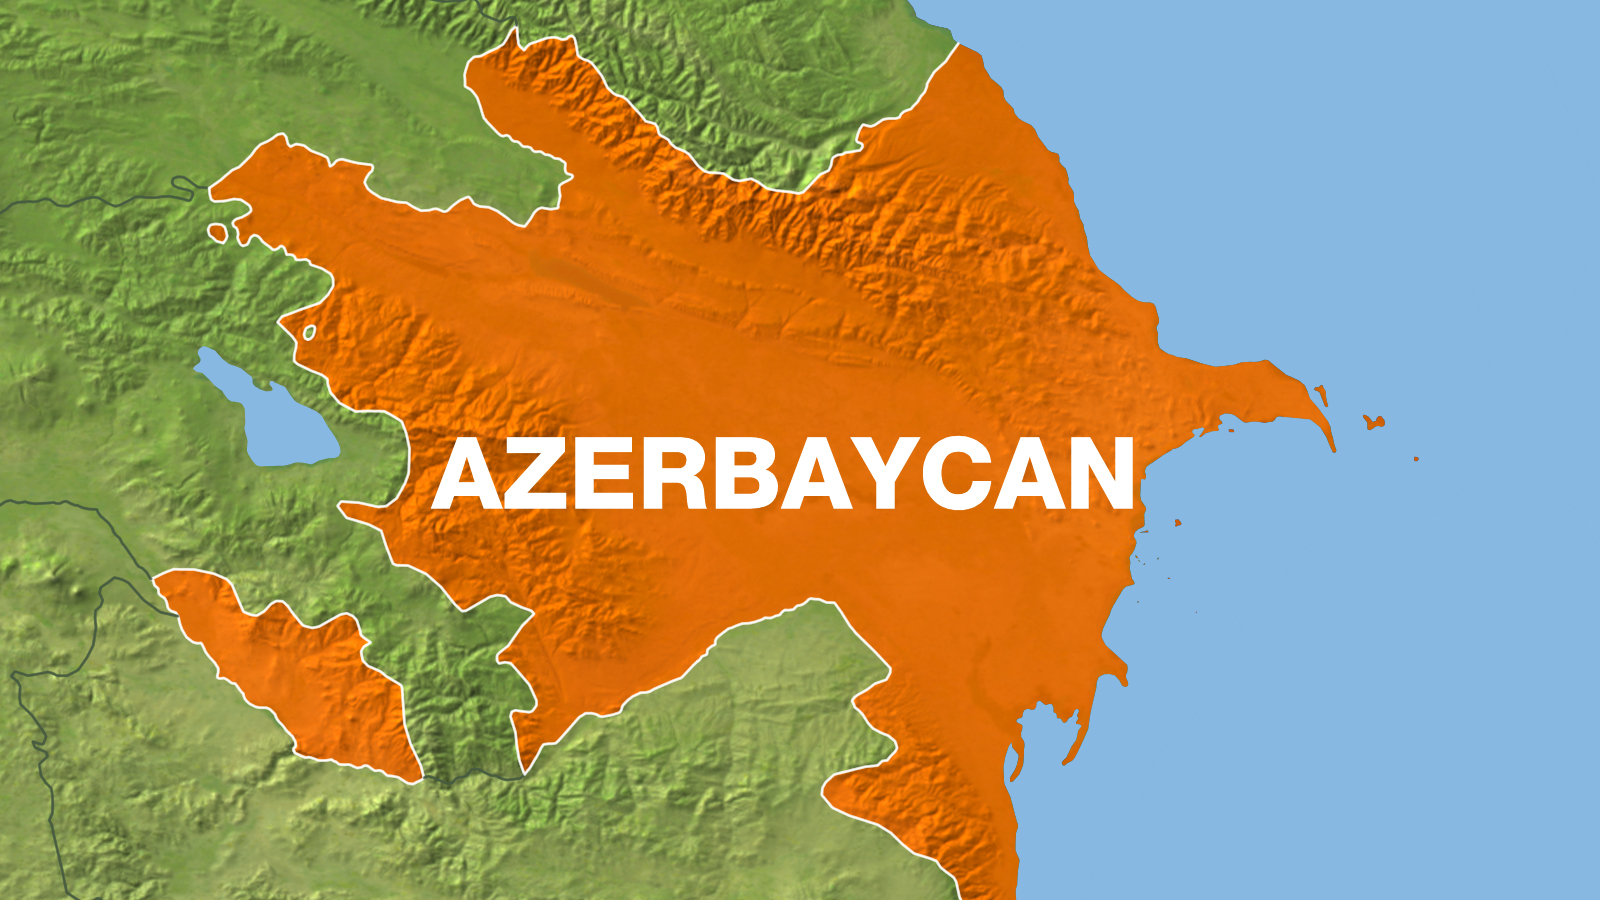 Azerbaycan Transit Geçiş Belgeleri Dağıtım Yerleri (Türkgözü, Dilucu, Esendere) Hakkında Bilgilendirme